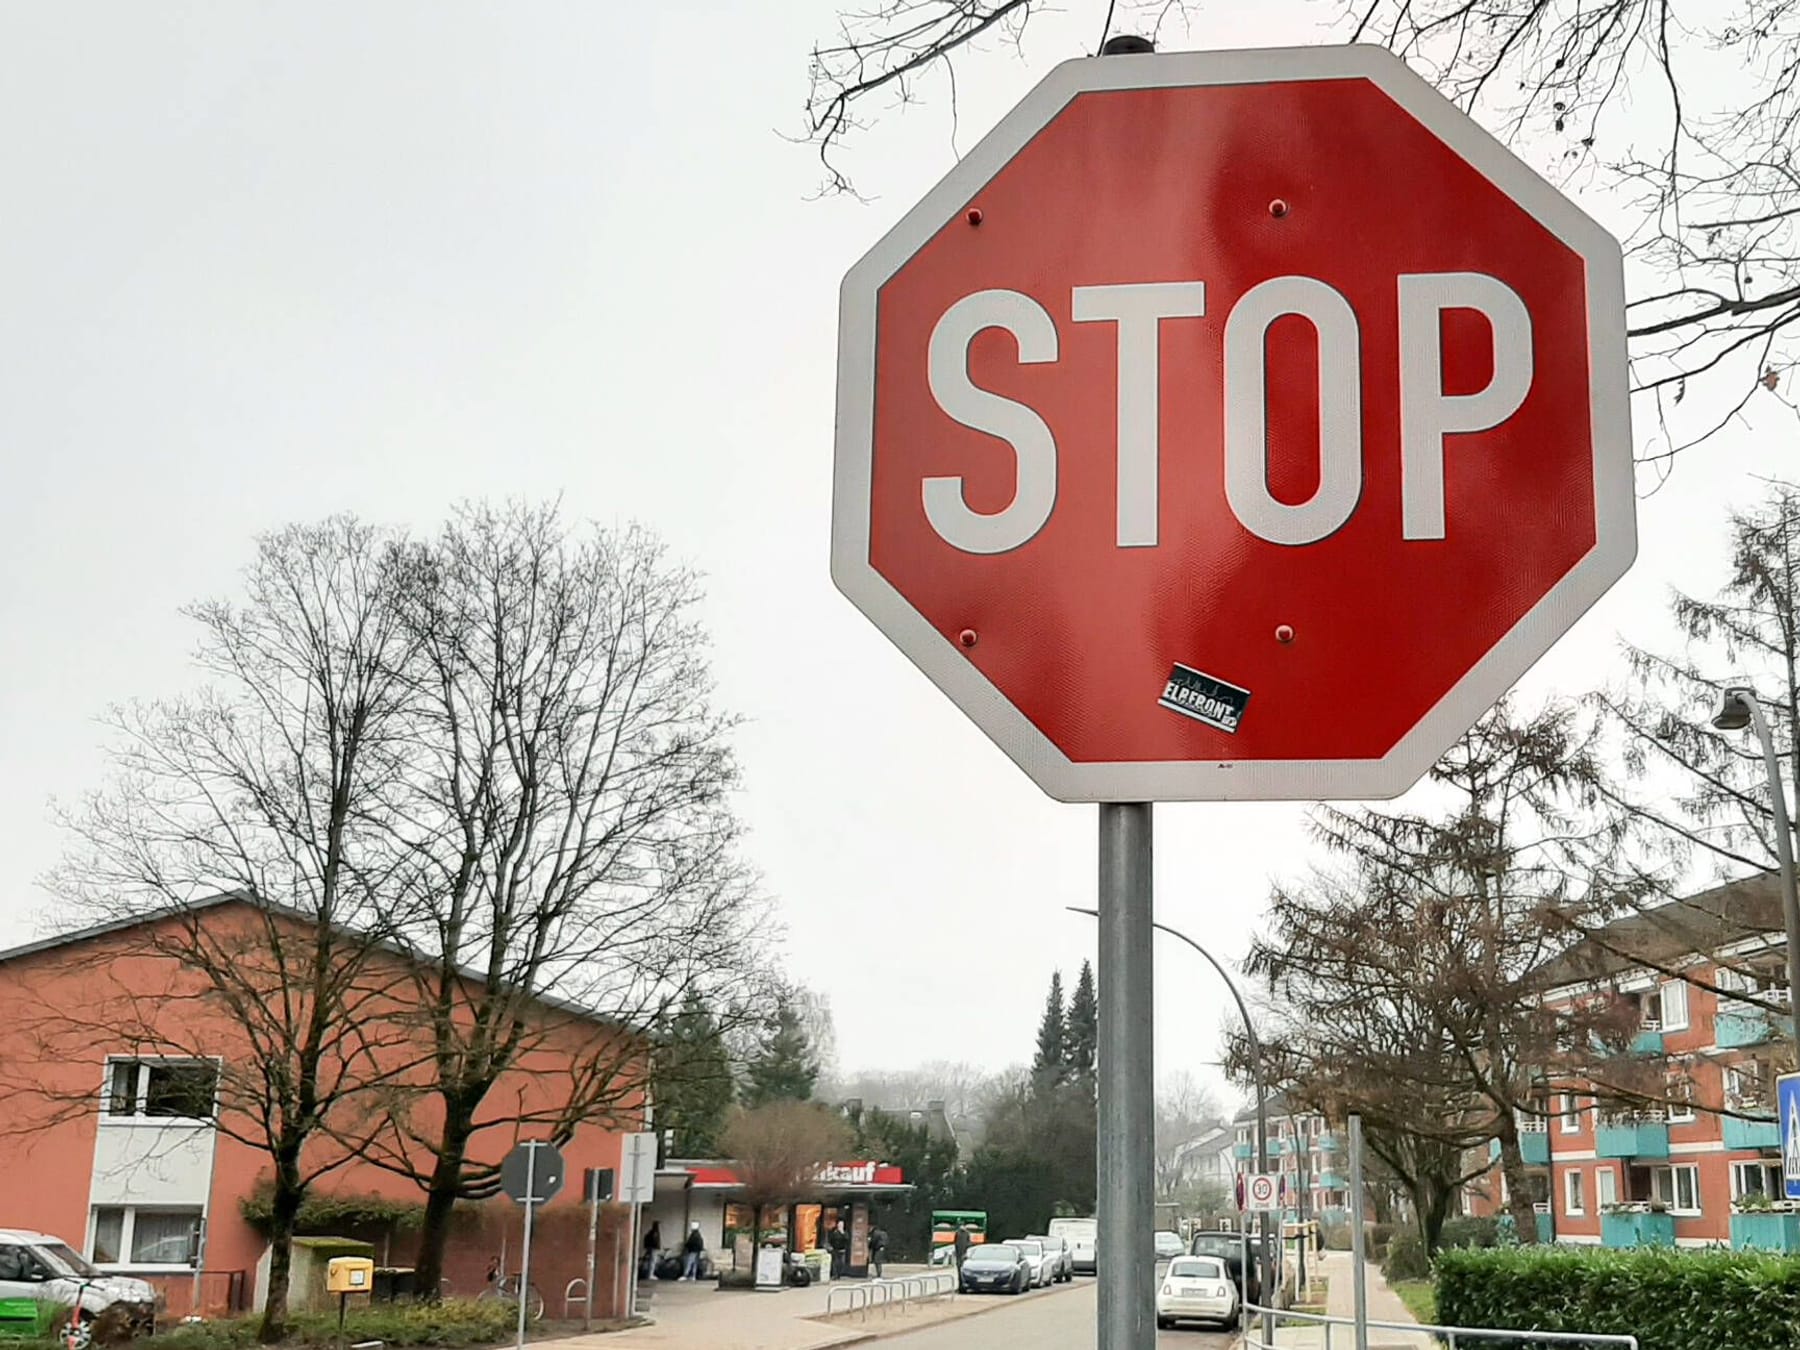 Stoppschild und Grüner Pfeil: Wo Autofahrer halten müssen